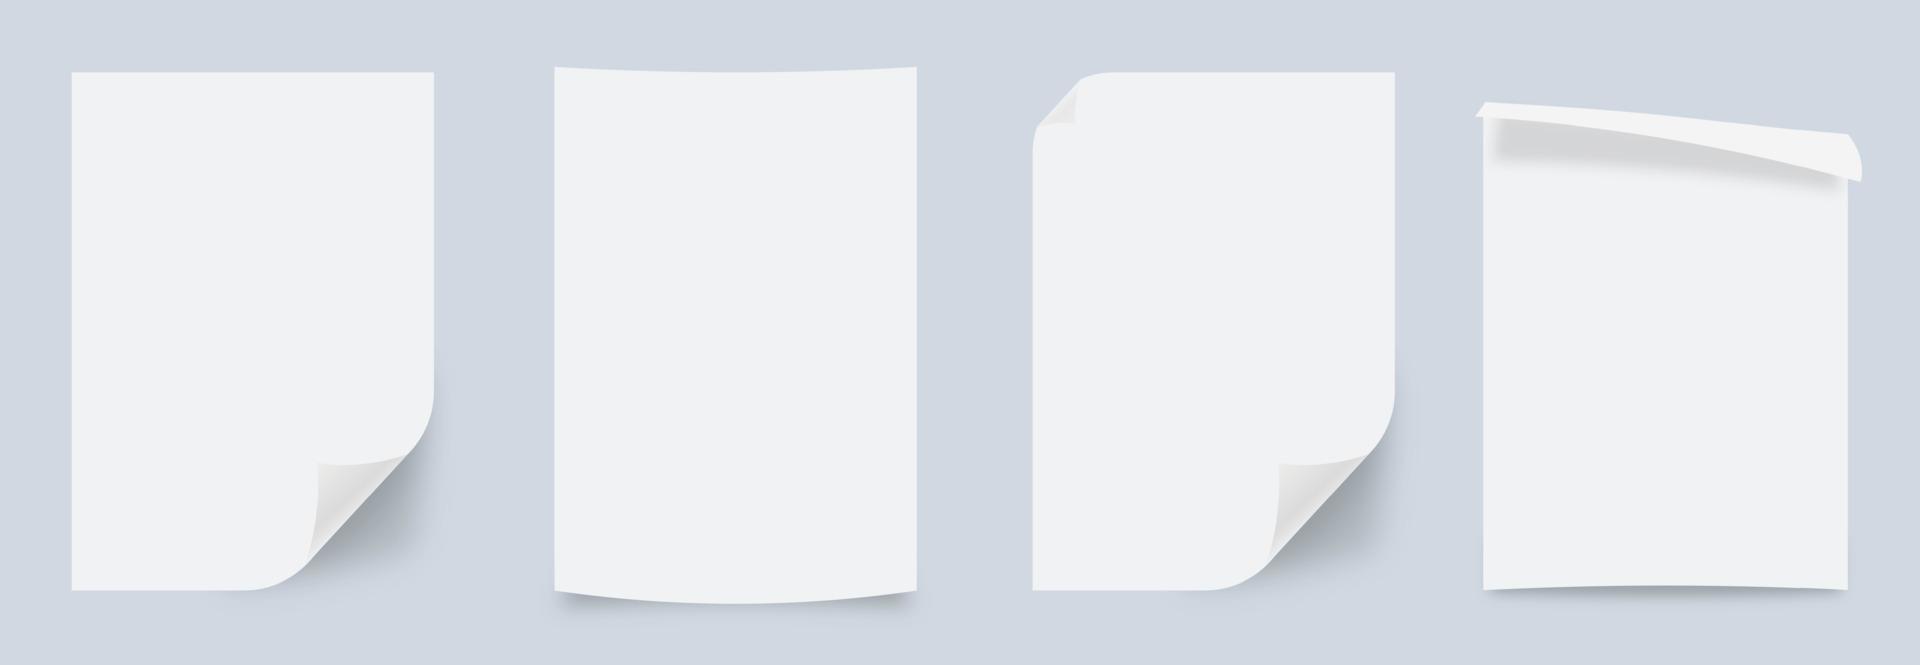 raccolta vettoriale di pagine di carta vuote piegate realistiche. effetto rugoso di carta incollata, sfondo realistico vettoriale. angolo di carta verticale bianco vettoriale arrotolato.